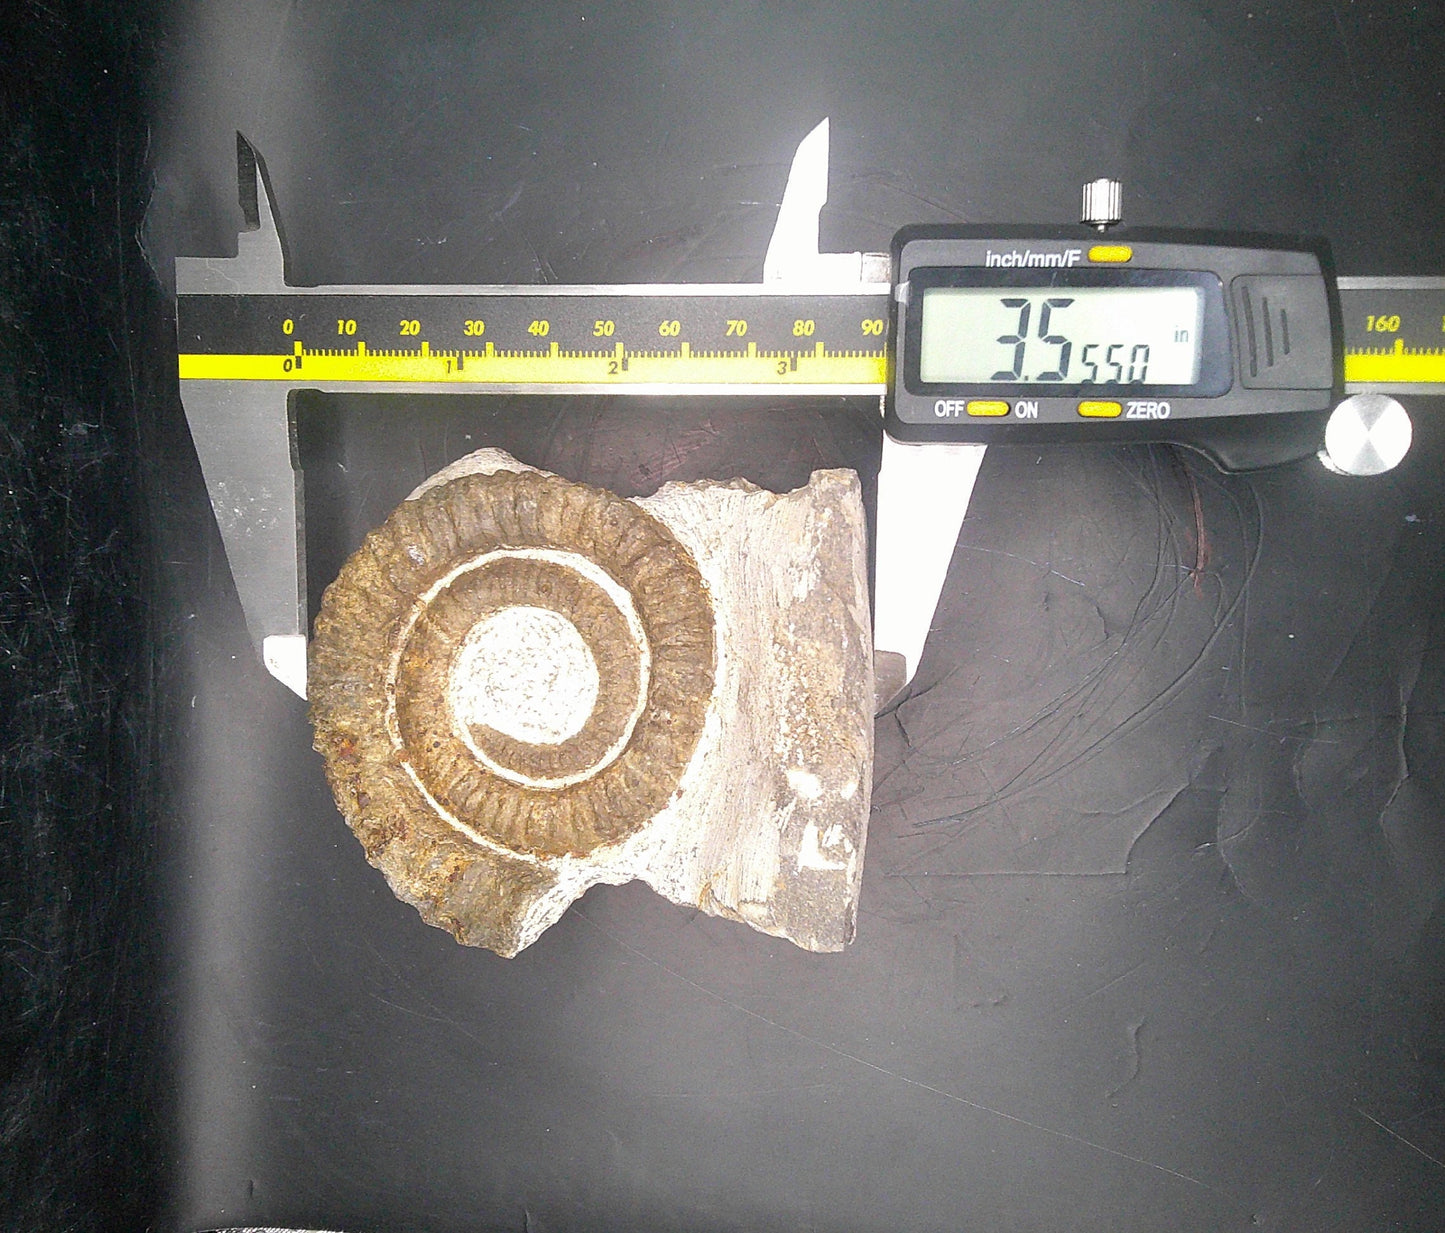 Ancient Ammonite